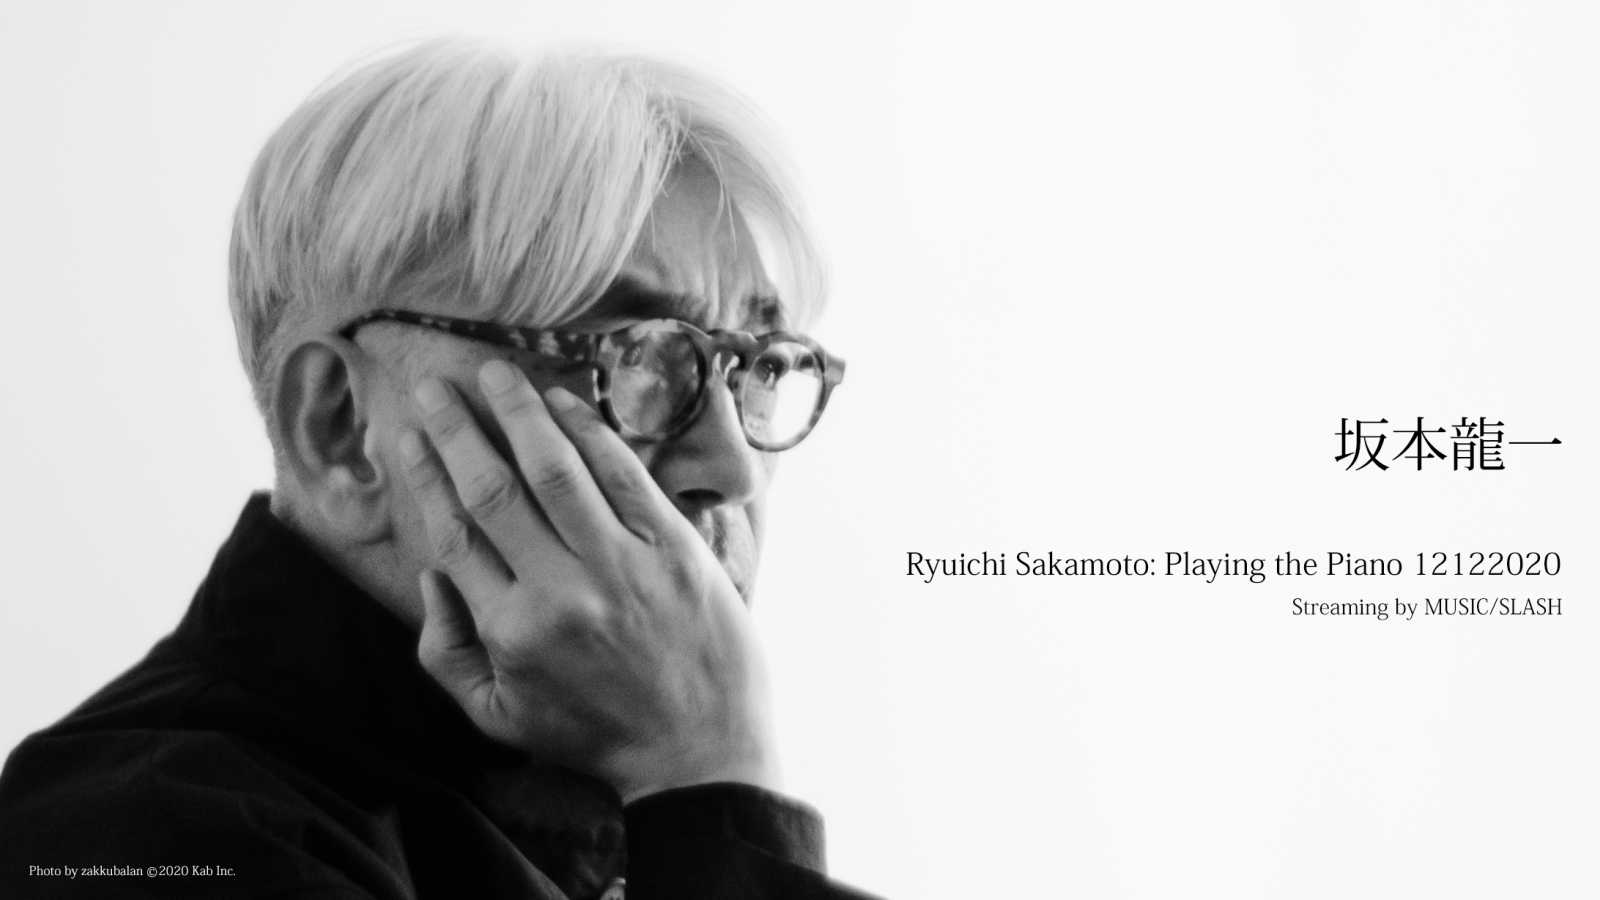 Ryuichi Sakamoto udostępnia starsze koncerty przed grudniową transmisją na żywo © Ryuichi Sakamoto. All rights reserved.